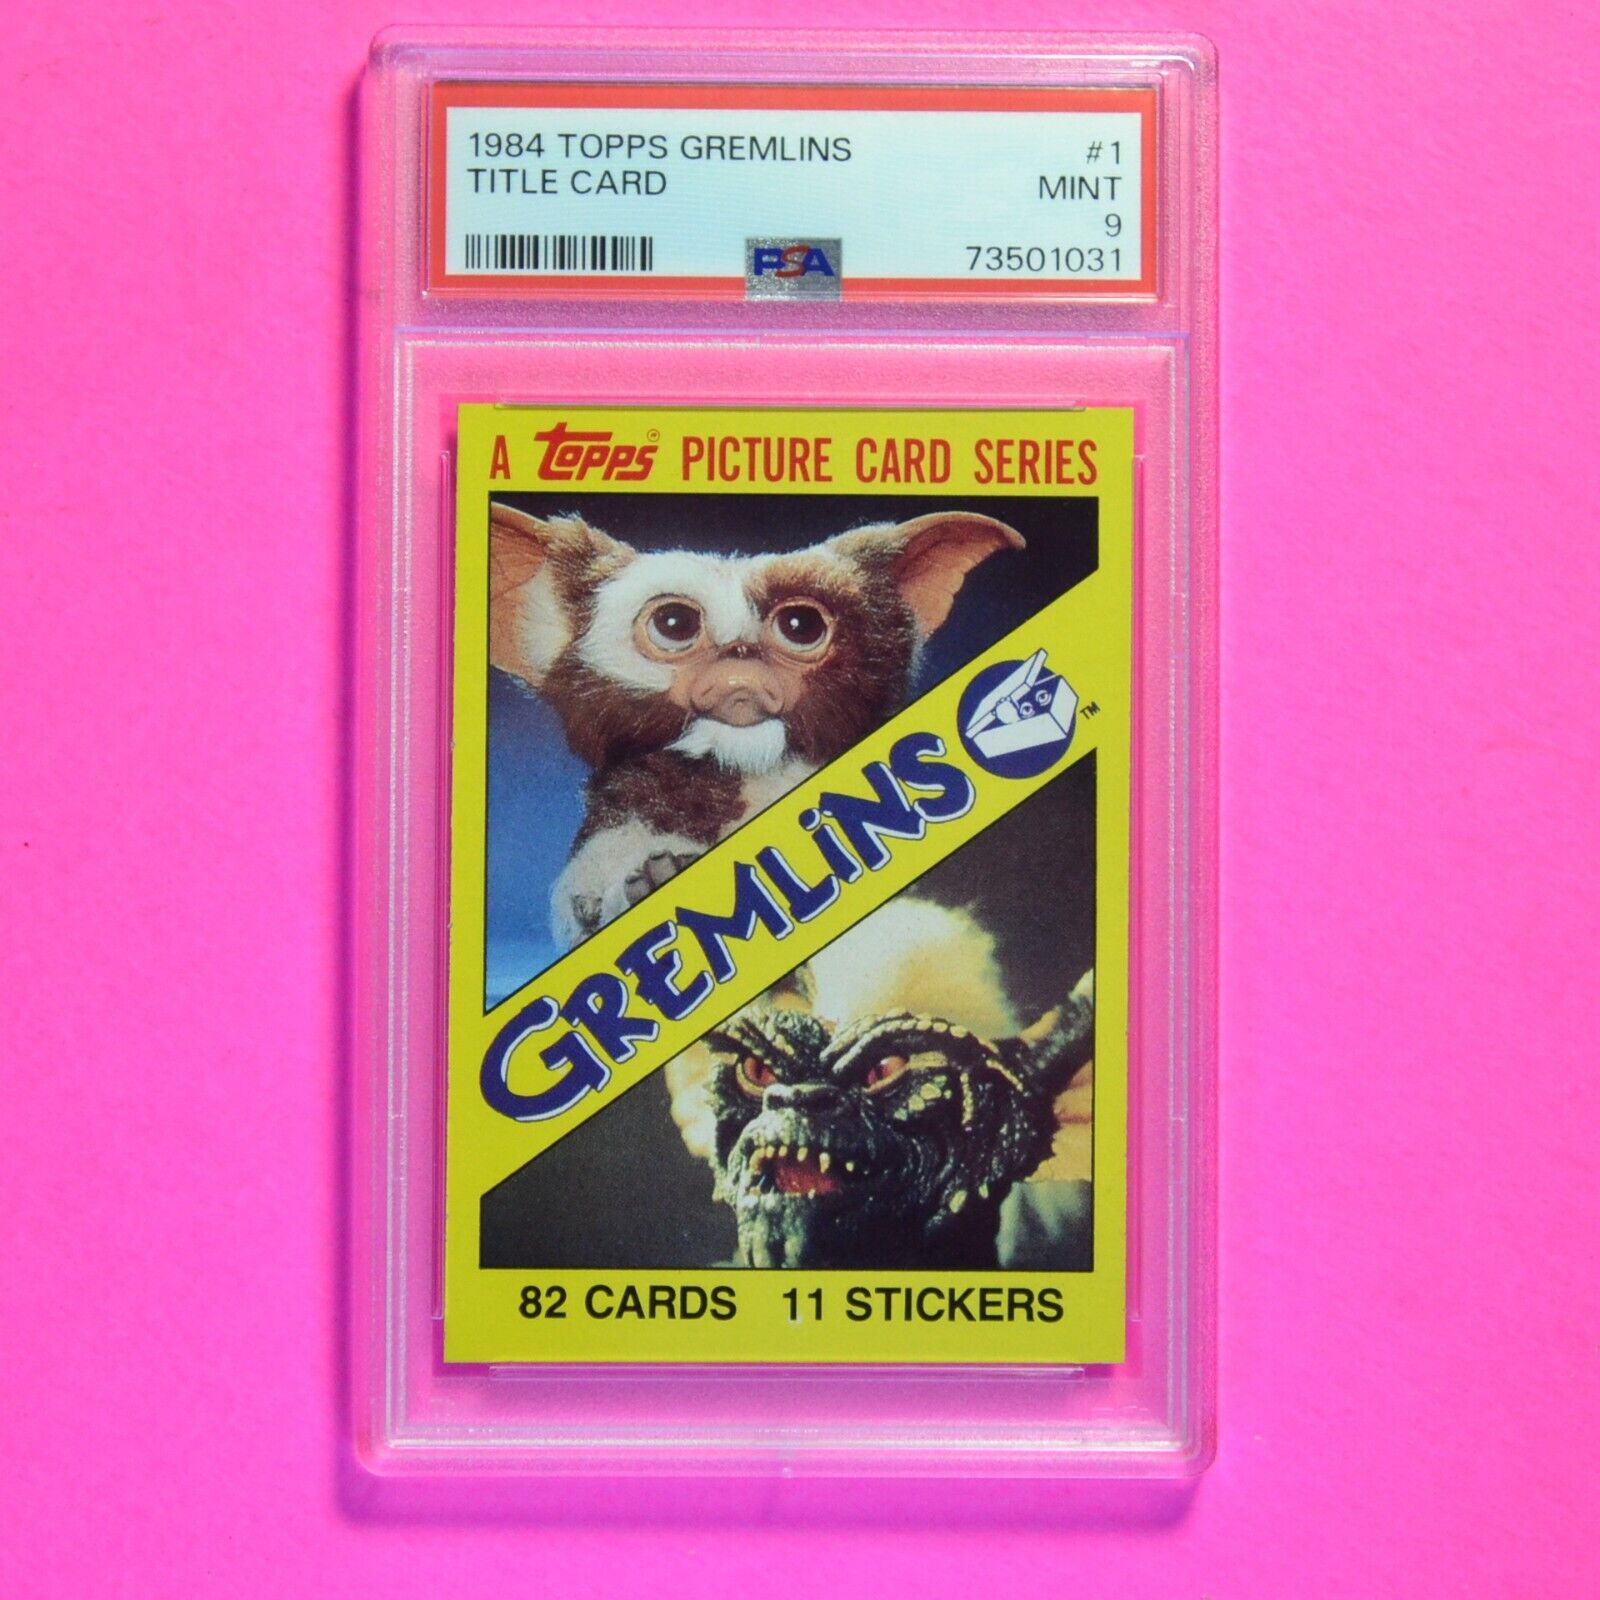 1984 Topps Gremlins #1 - Gremlins Title Card Logo - PSA 9 Mint - highest graded